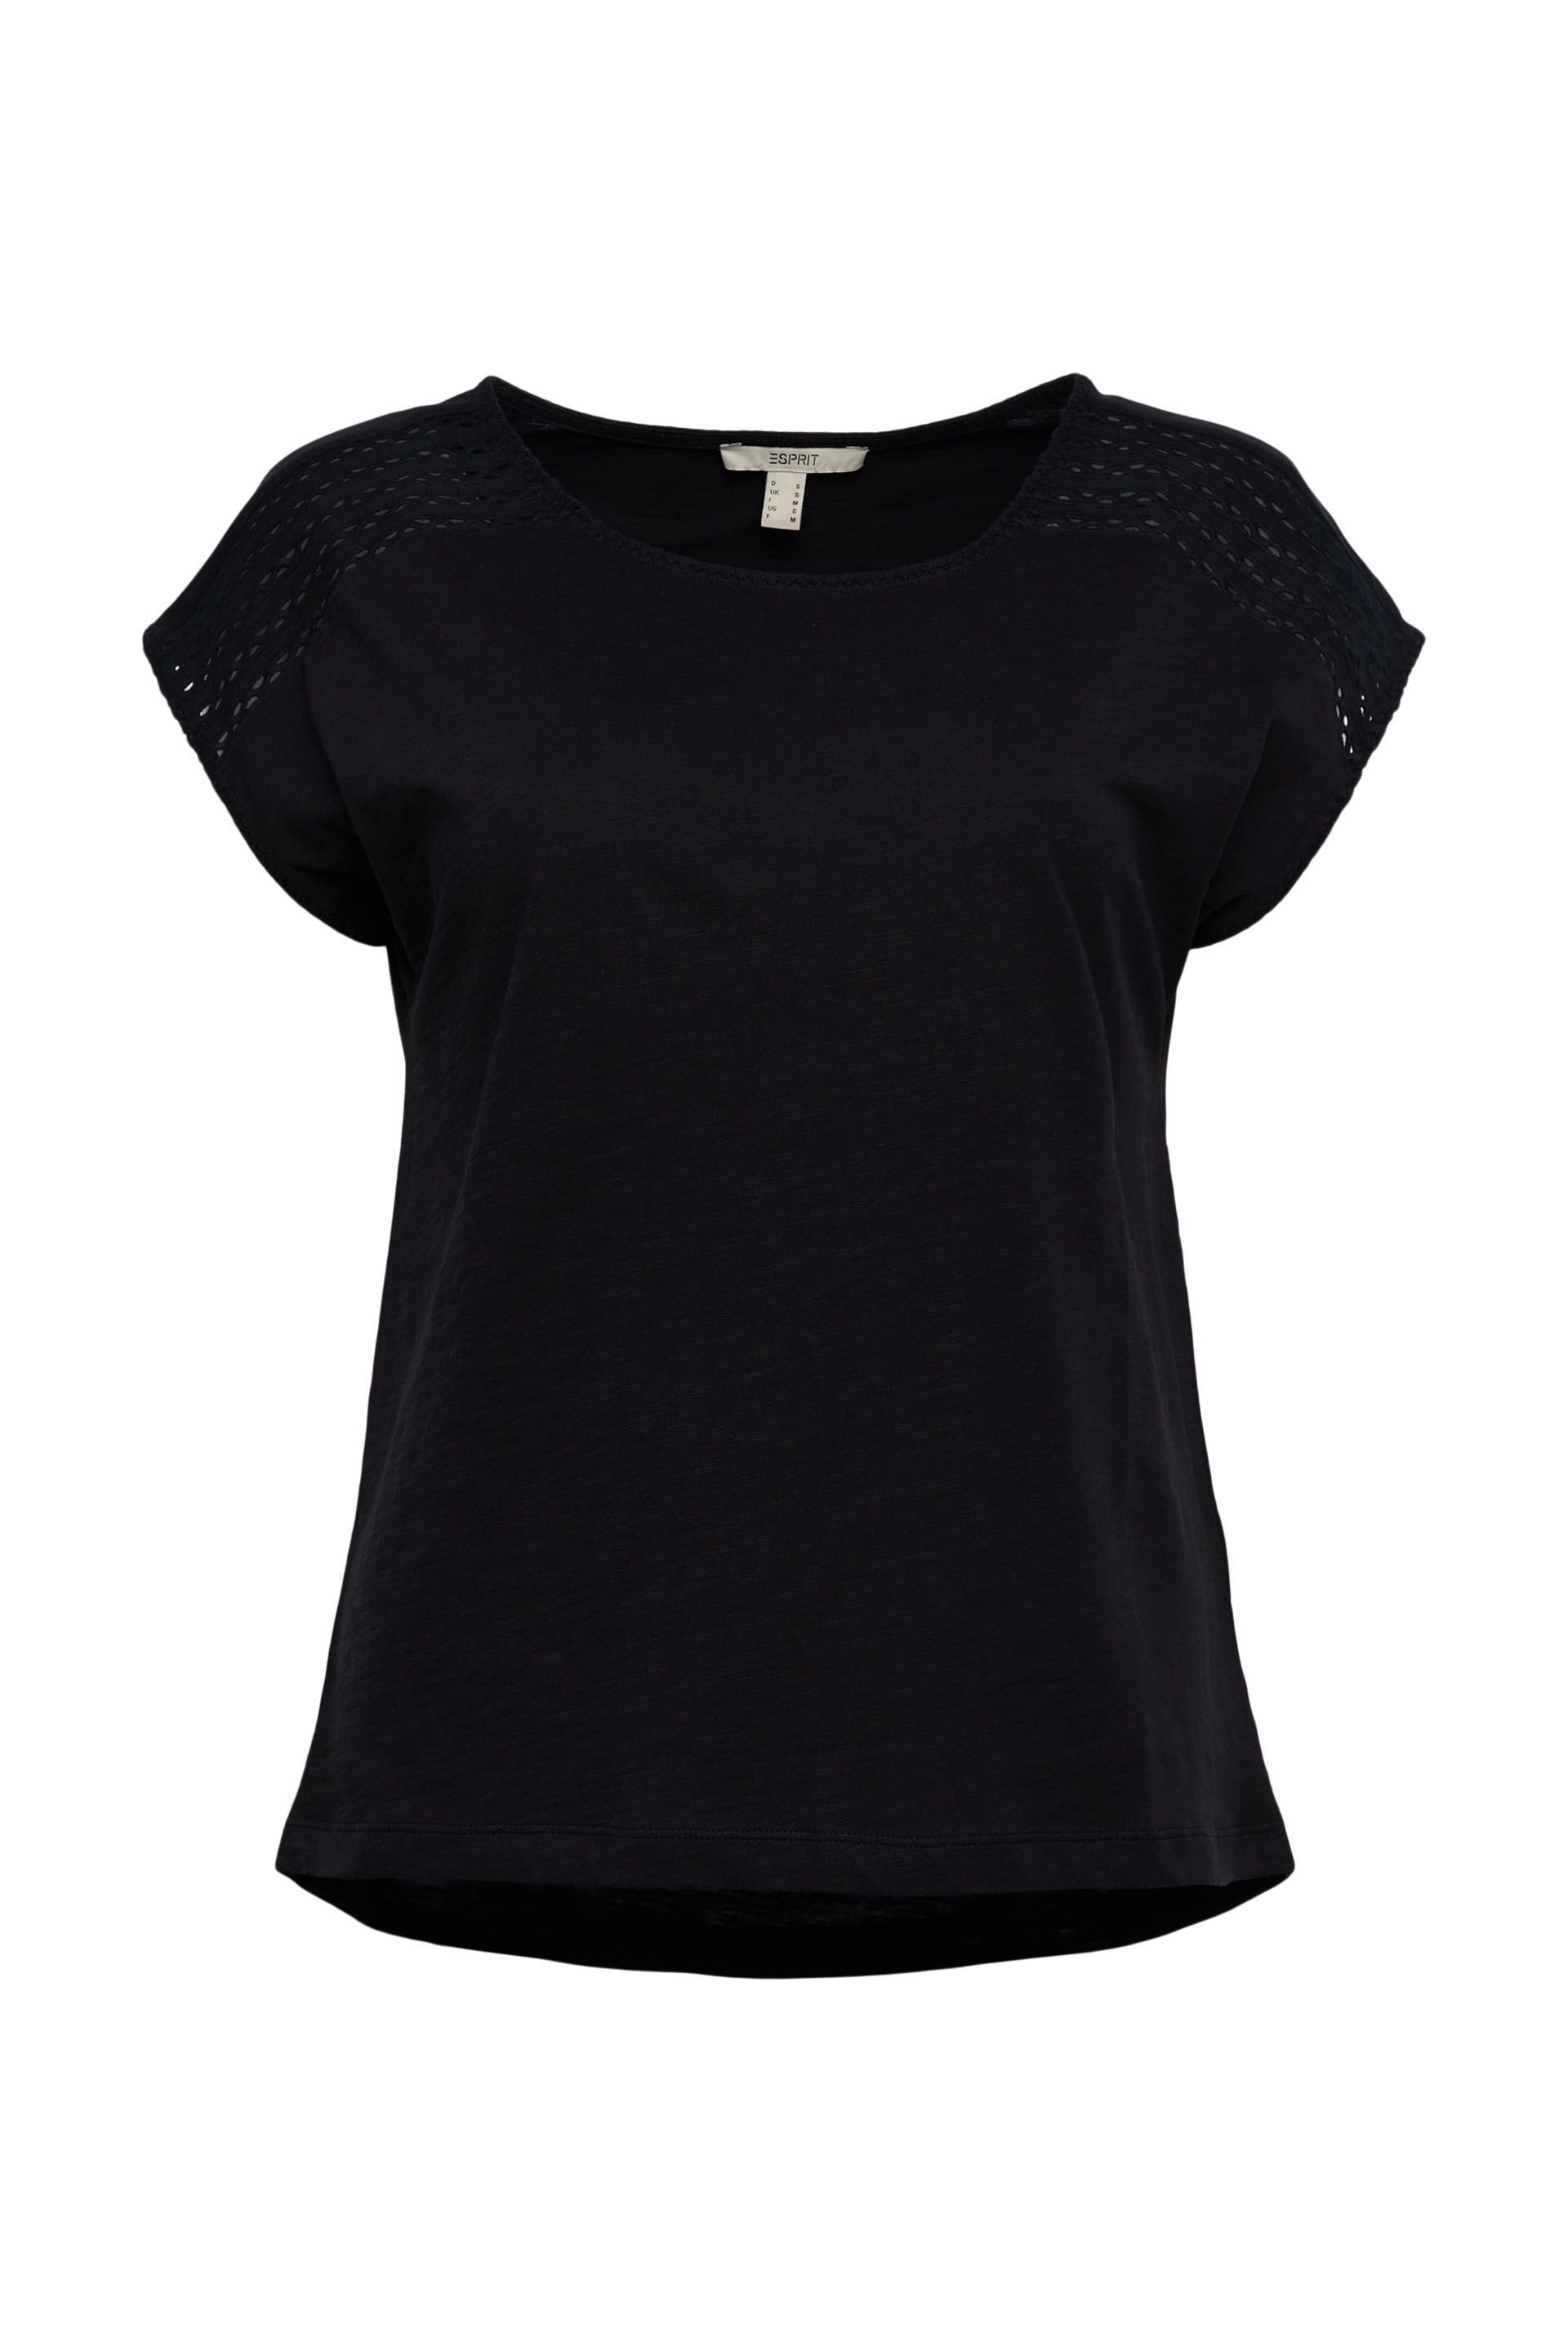 Lang Groenland Commotie Esprit shirt met kant zwart 062EE1K308 001